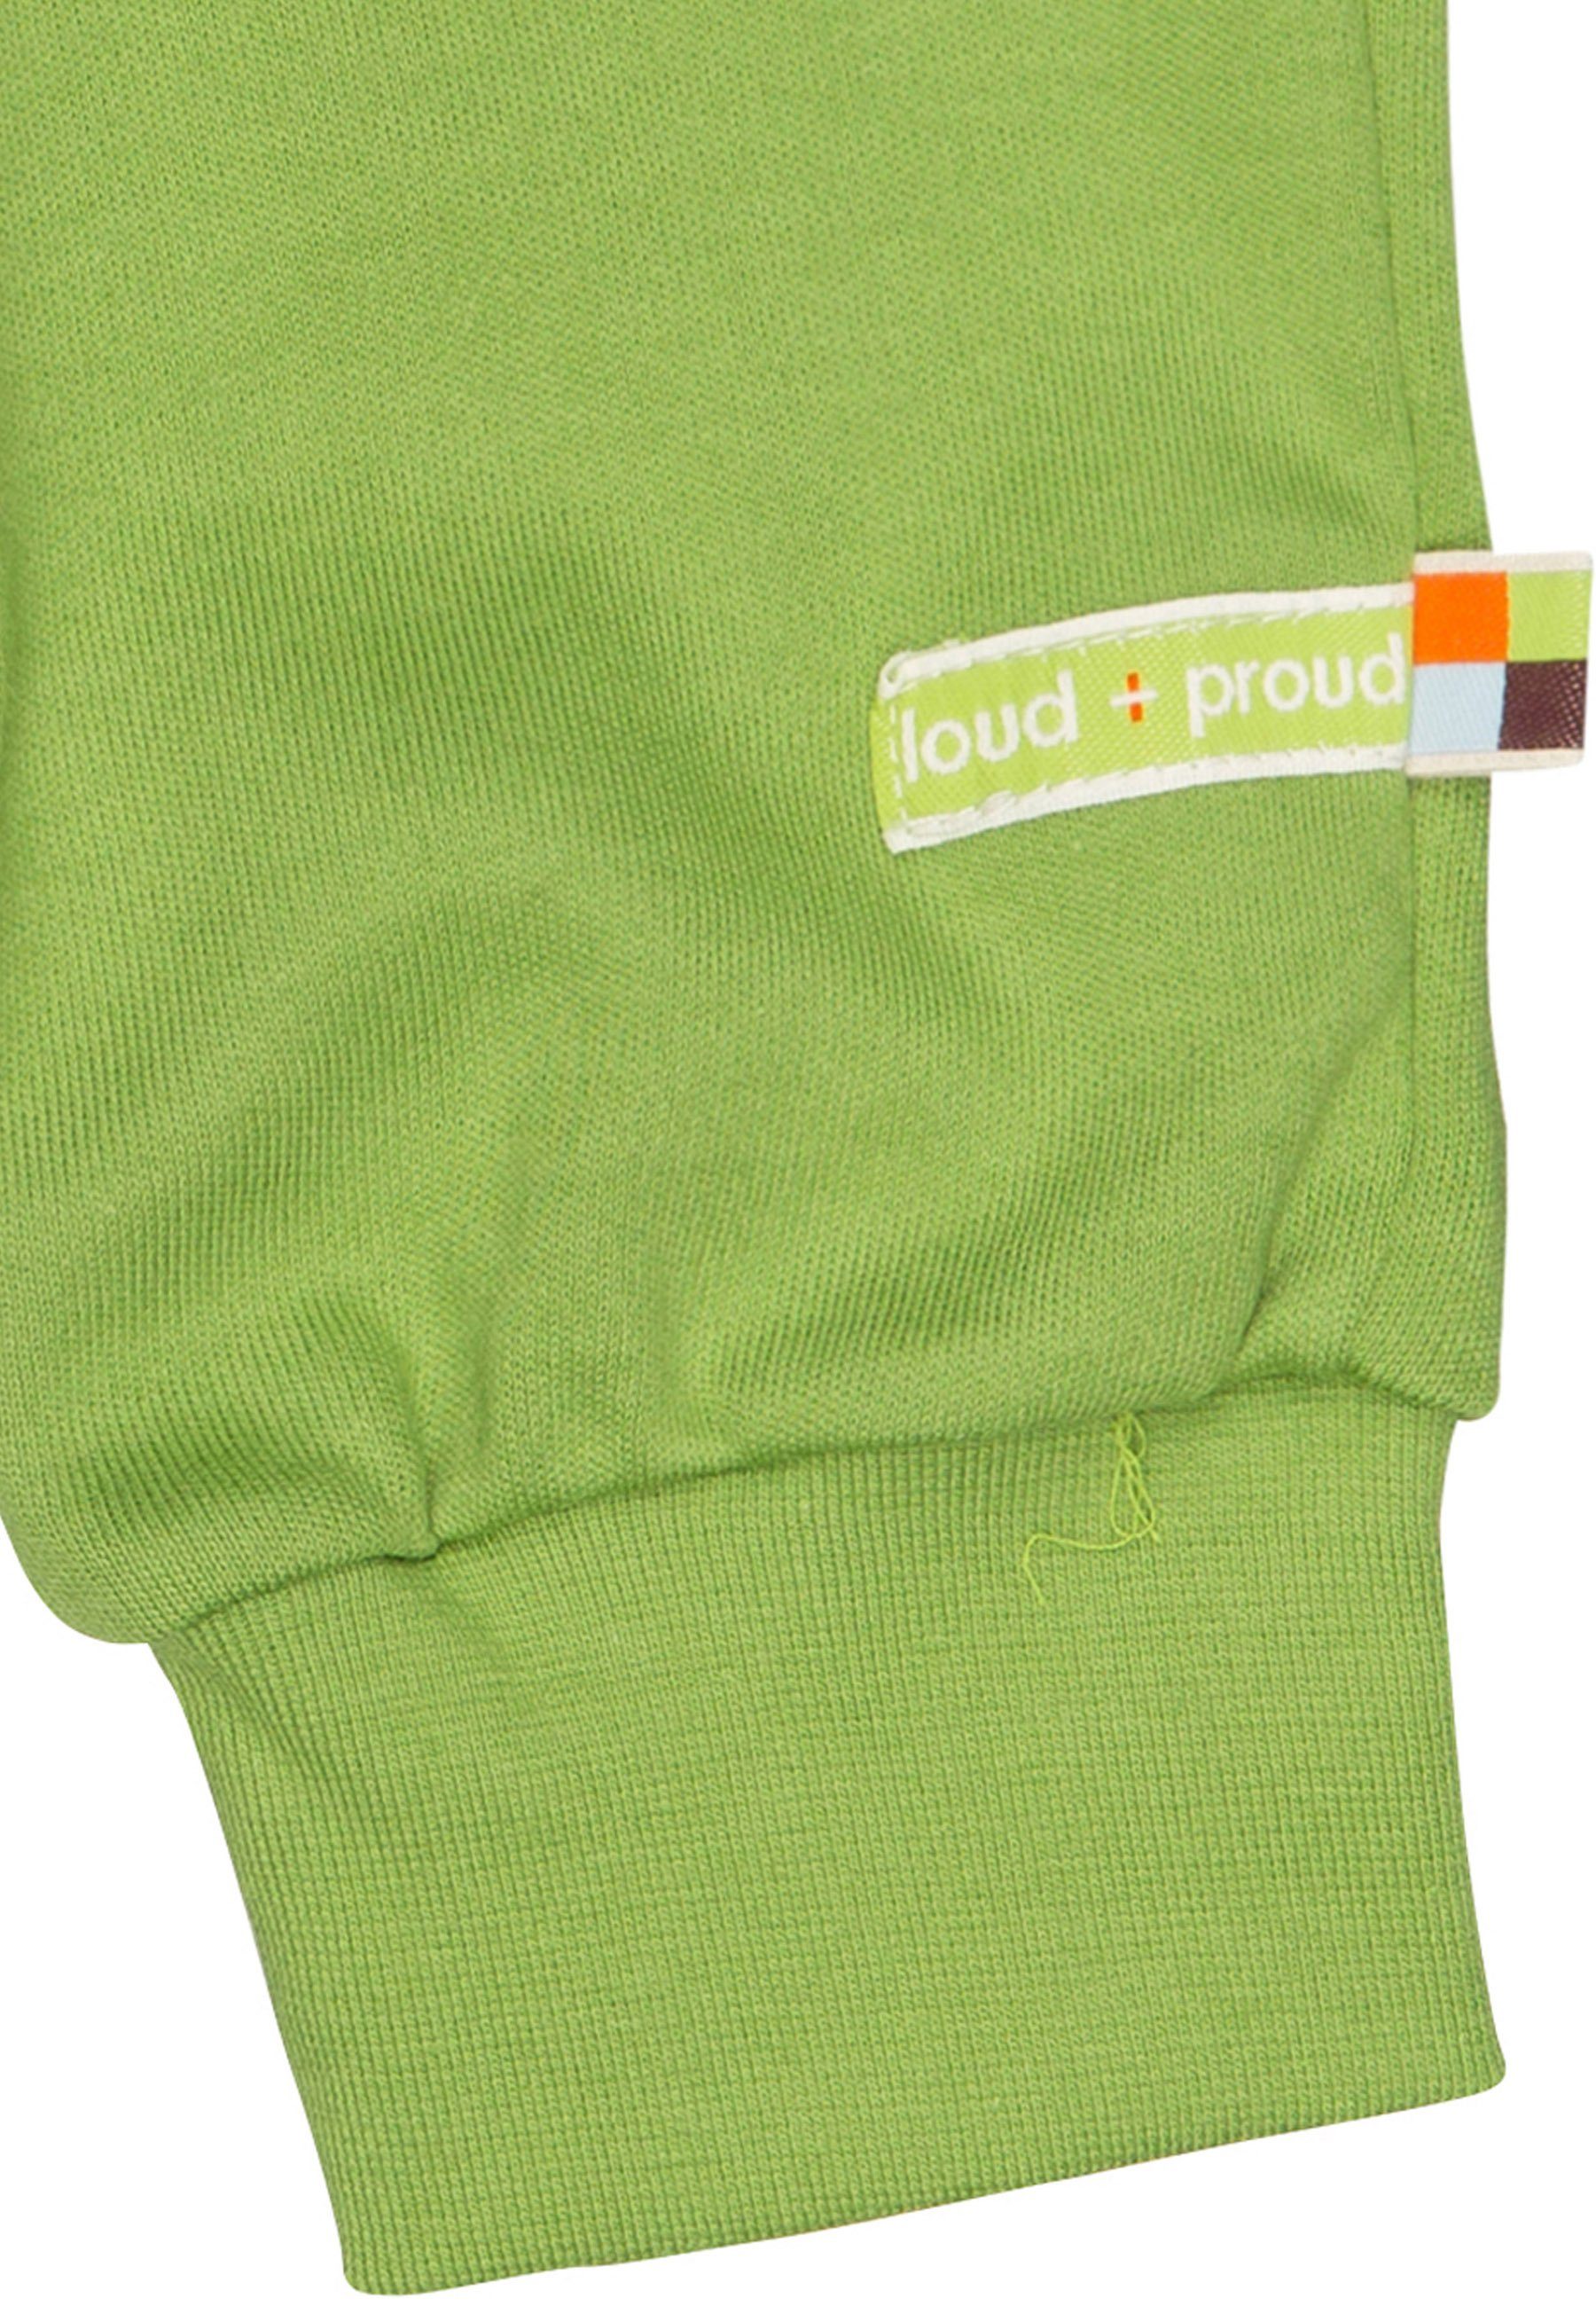 loud + proud Sweathose zertifizierte Moos Bio-Baumwolle GOTS mit Umschlagbund